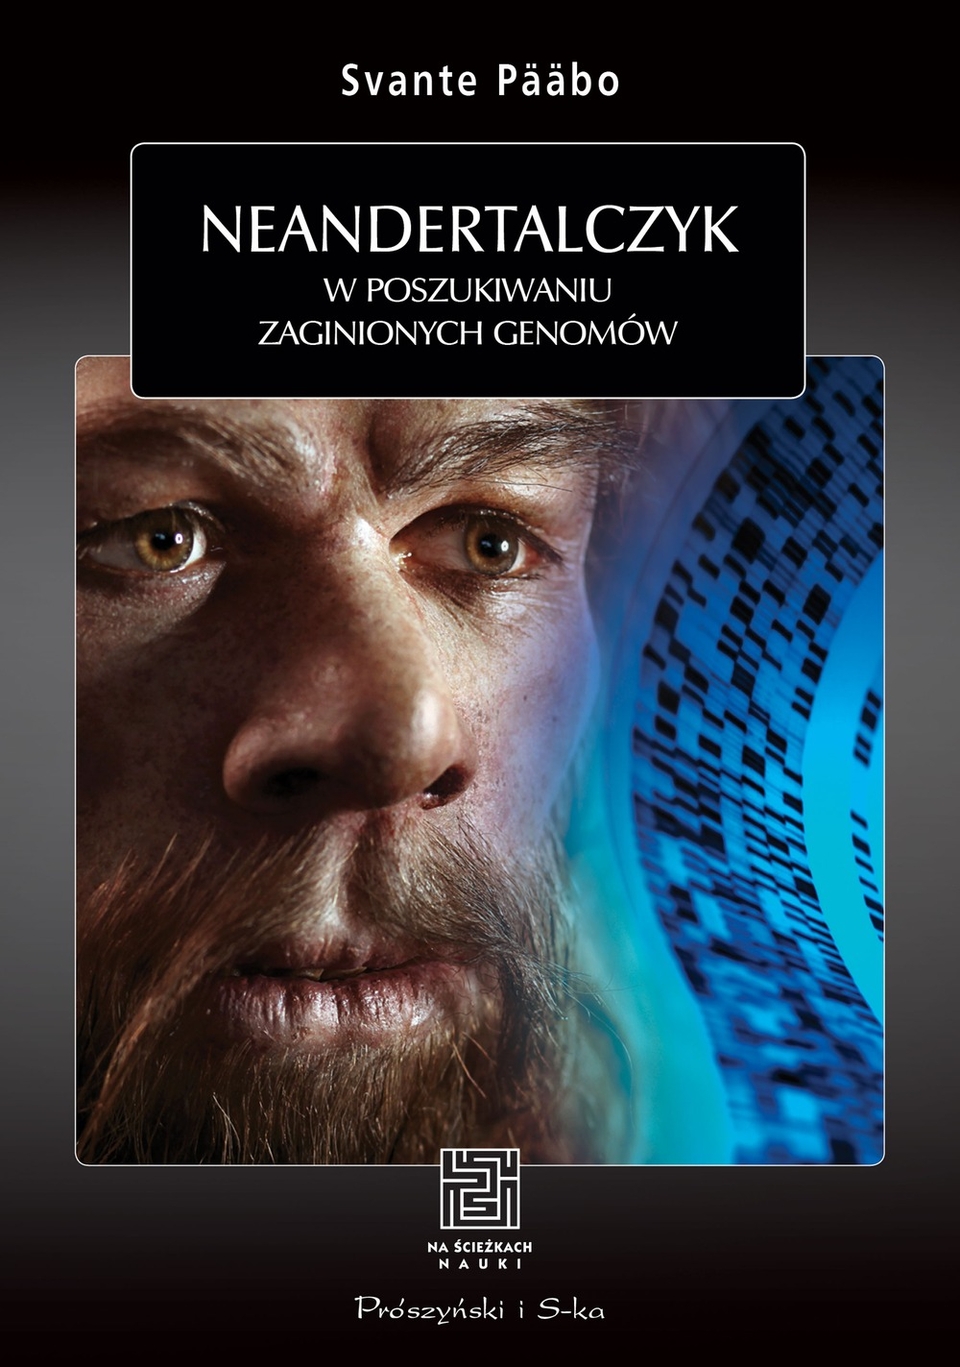 Svante Paabo, "Neandertalczyk" - fascynująca książka o pochodzeniu człowieka w księgarniach